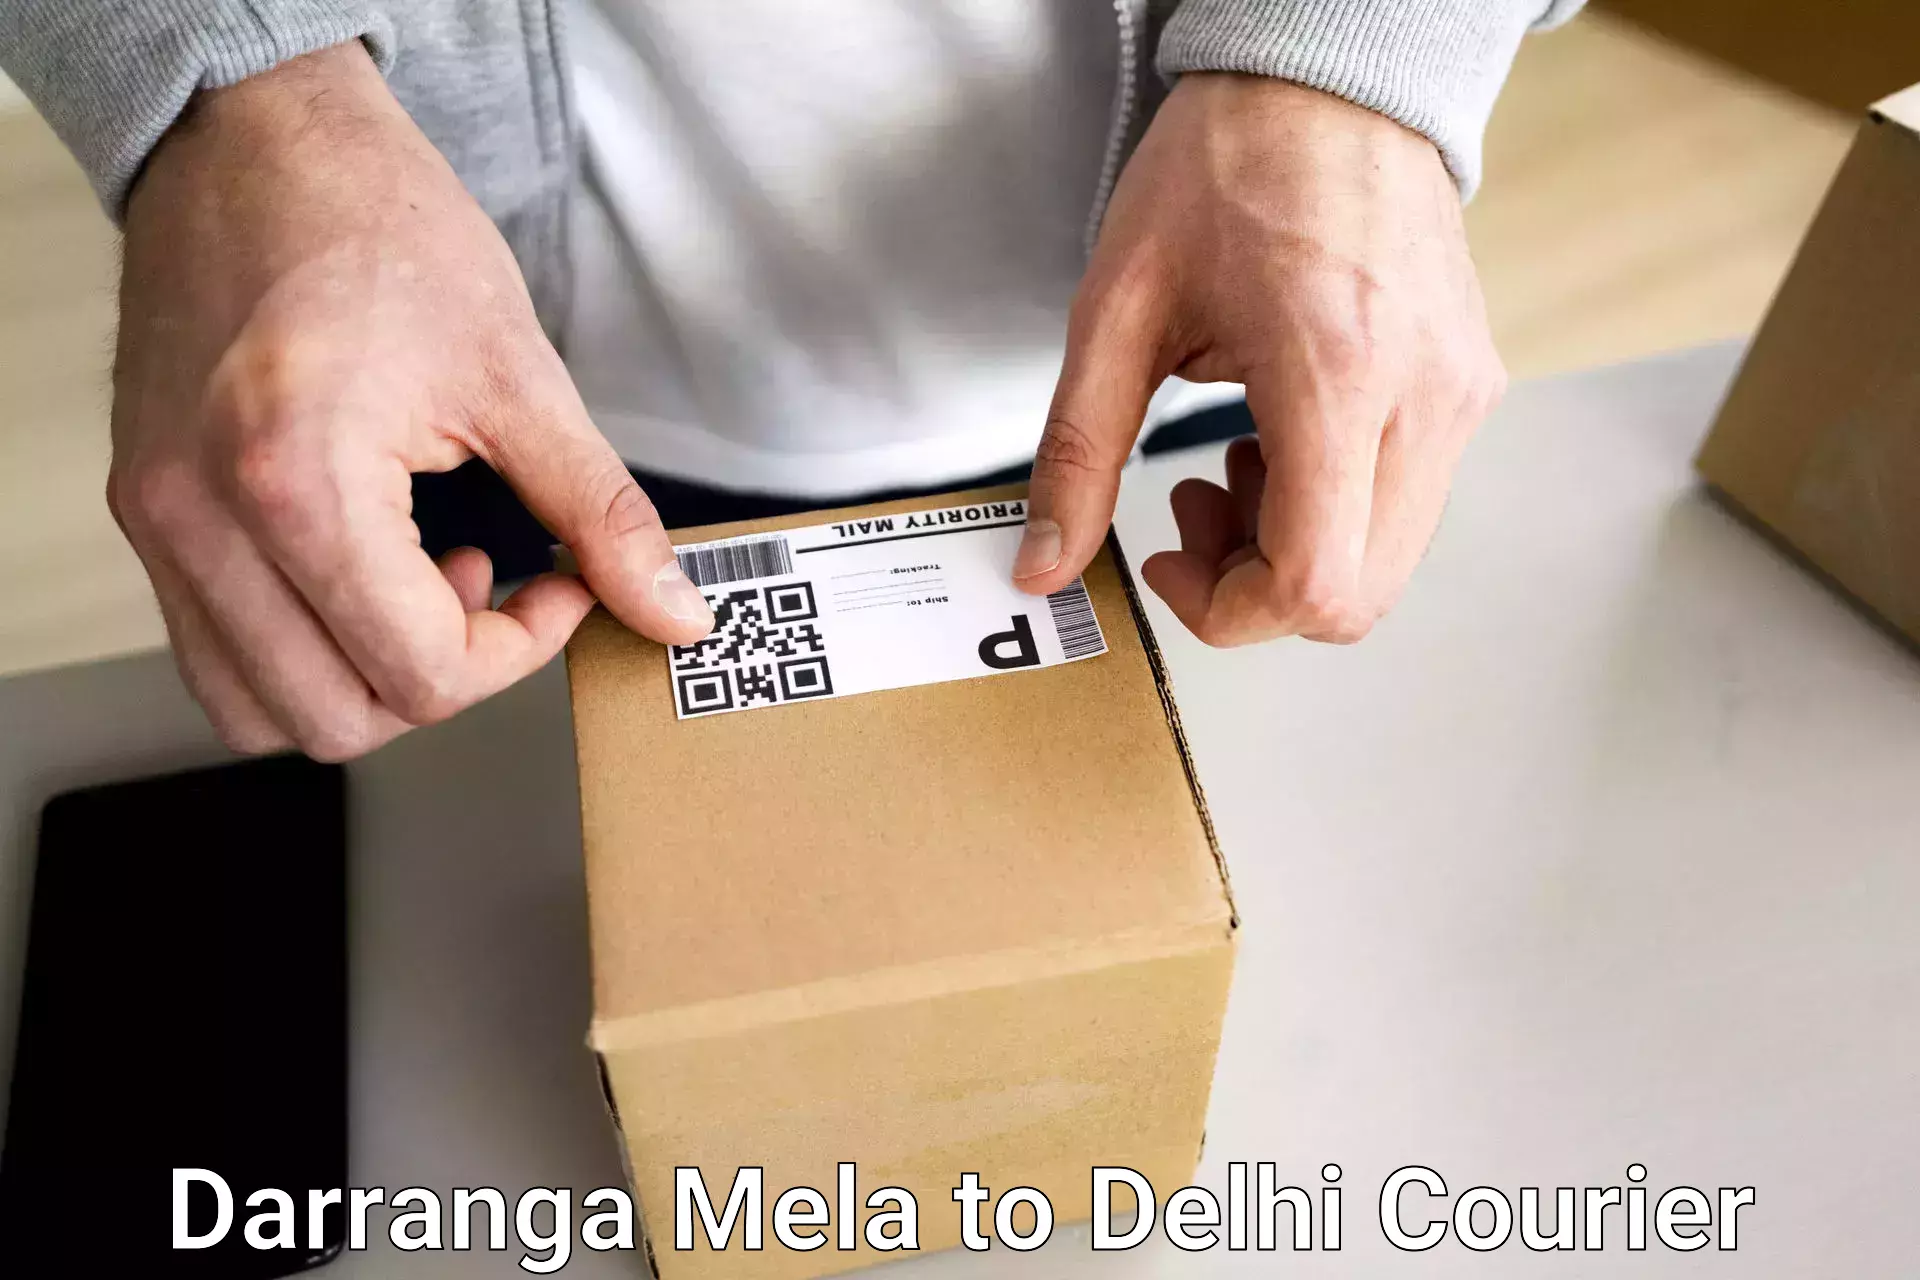 High-quality baggage shipment Darranga Mela to Lodhi Road